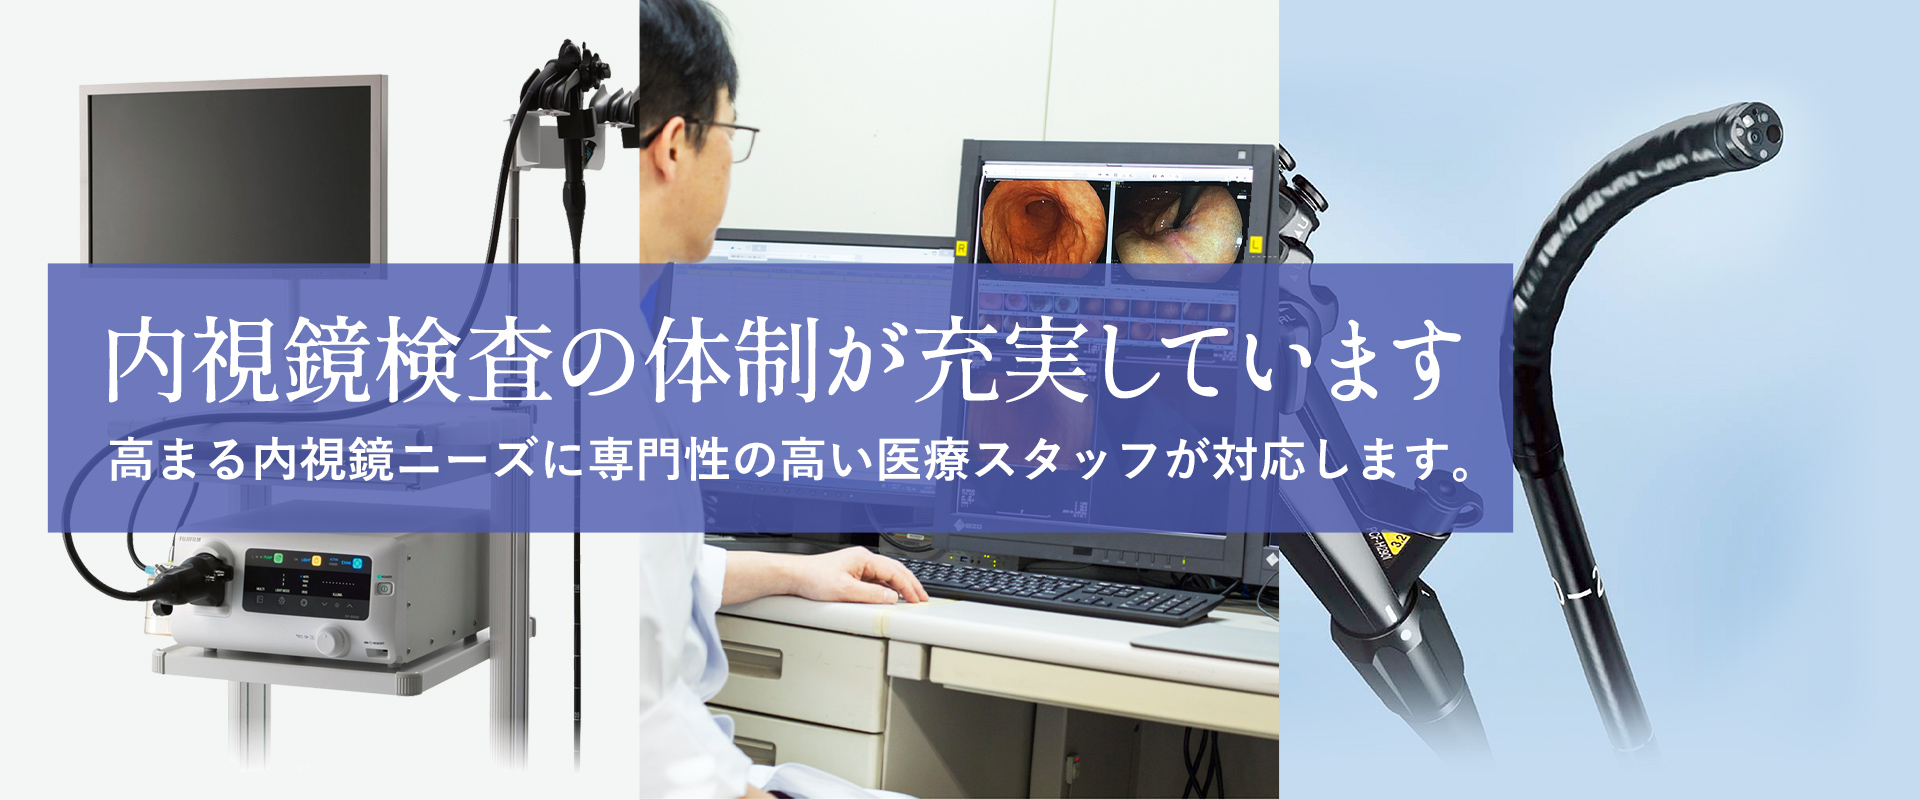 内視鏡検査の体制が充実しています。高まる内視鏡ニーズに専門性の高い医療スタッフが対応します。